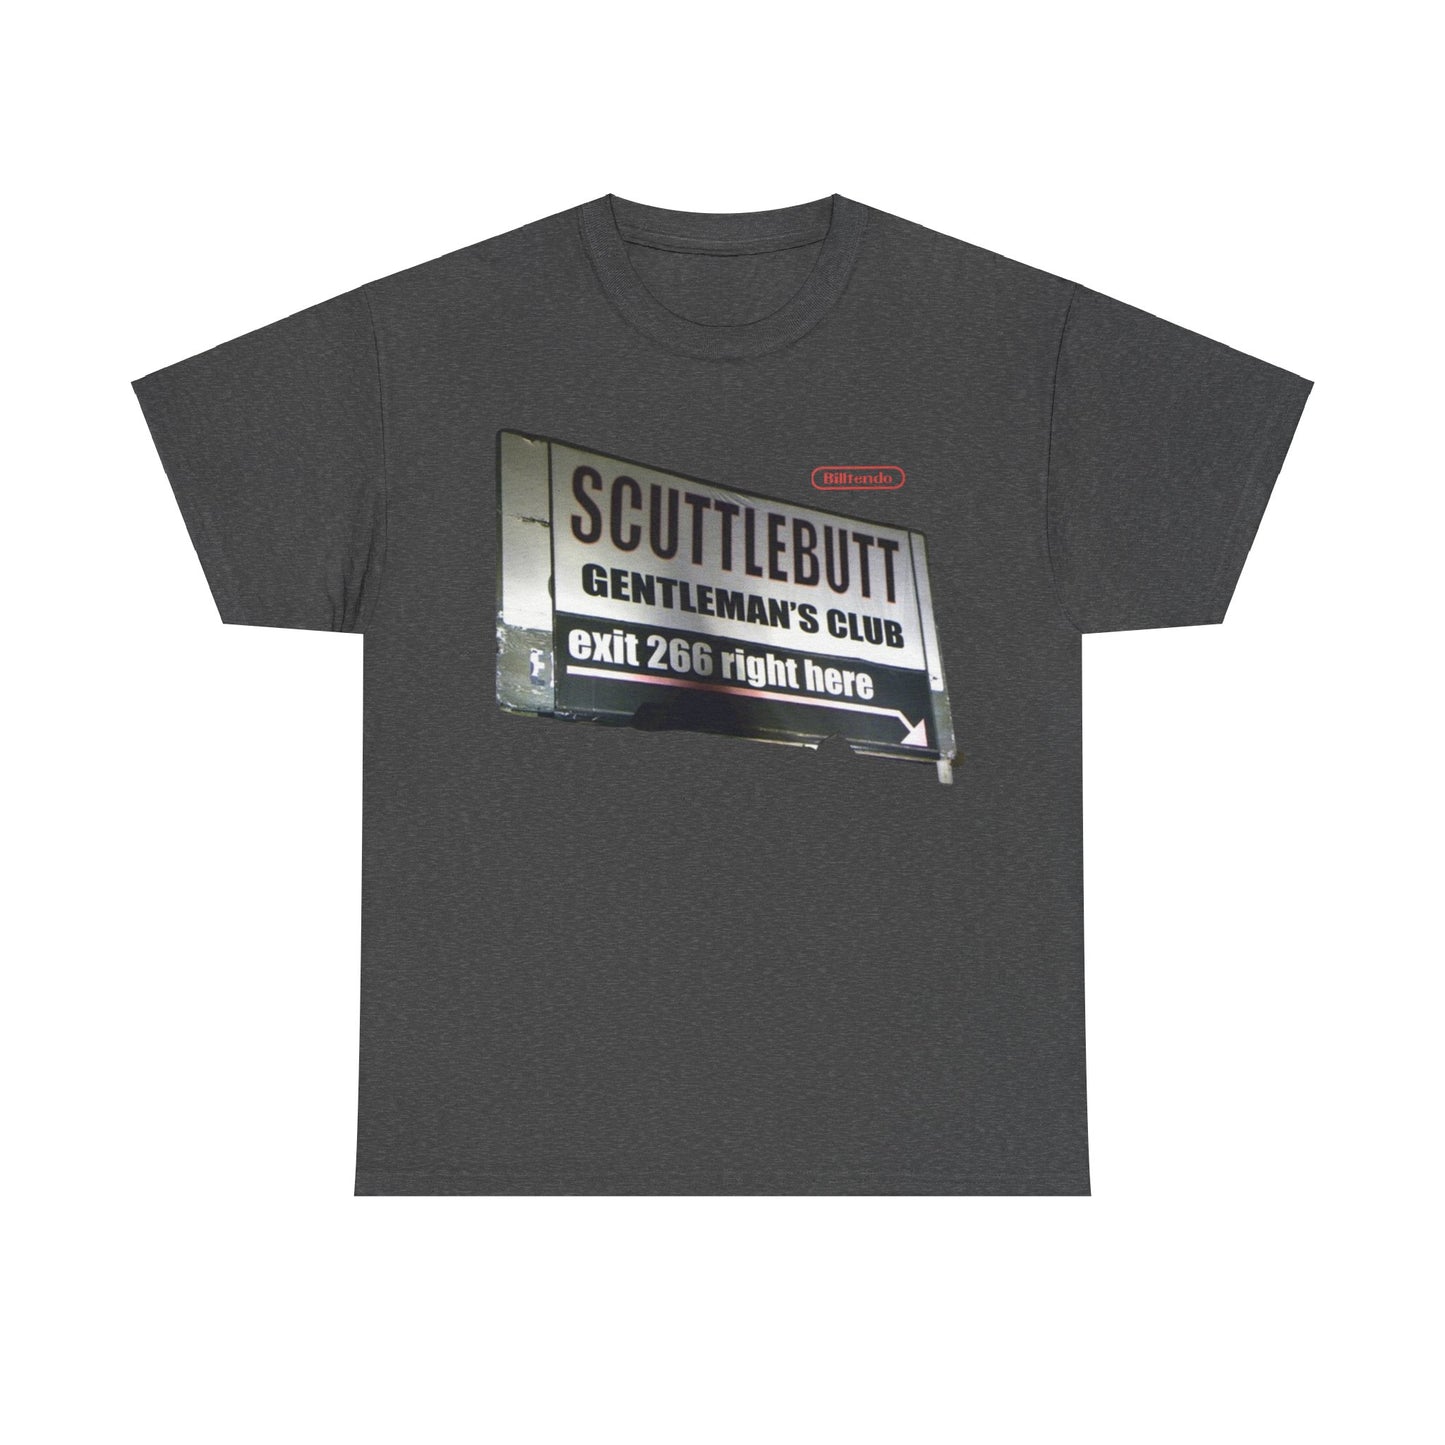 Scuttlebutt billboard T shirt